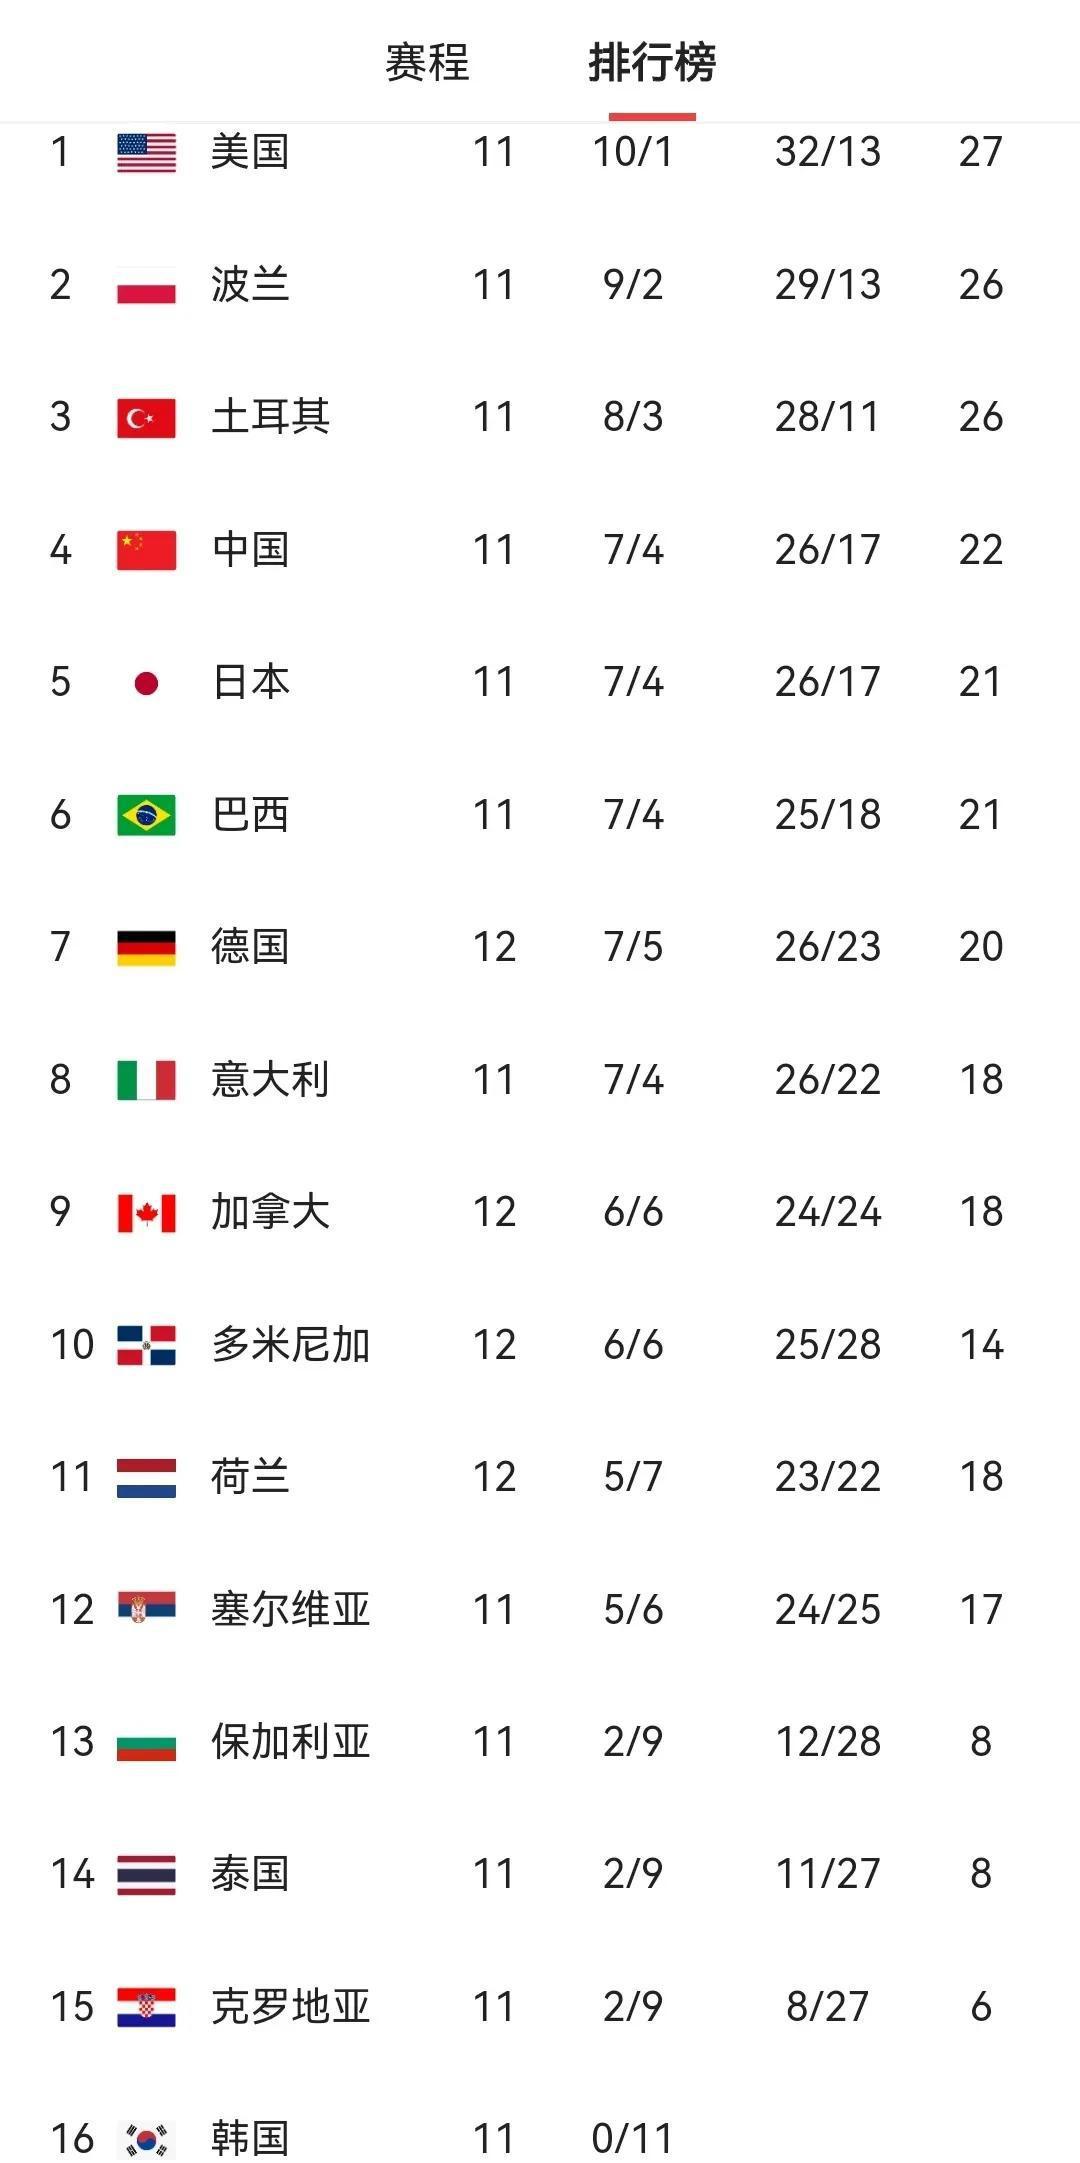 世界女排联赛积分榜最新变化
中国女排提前锁定总决赛席位
今天对阵榜首美国女排凶多